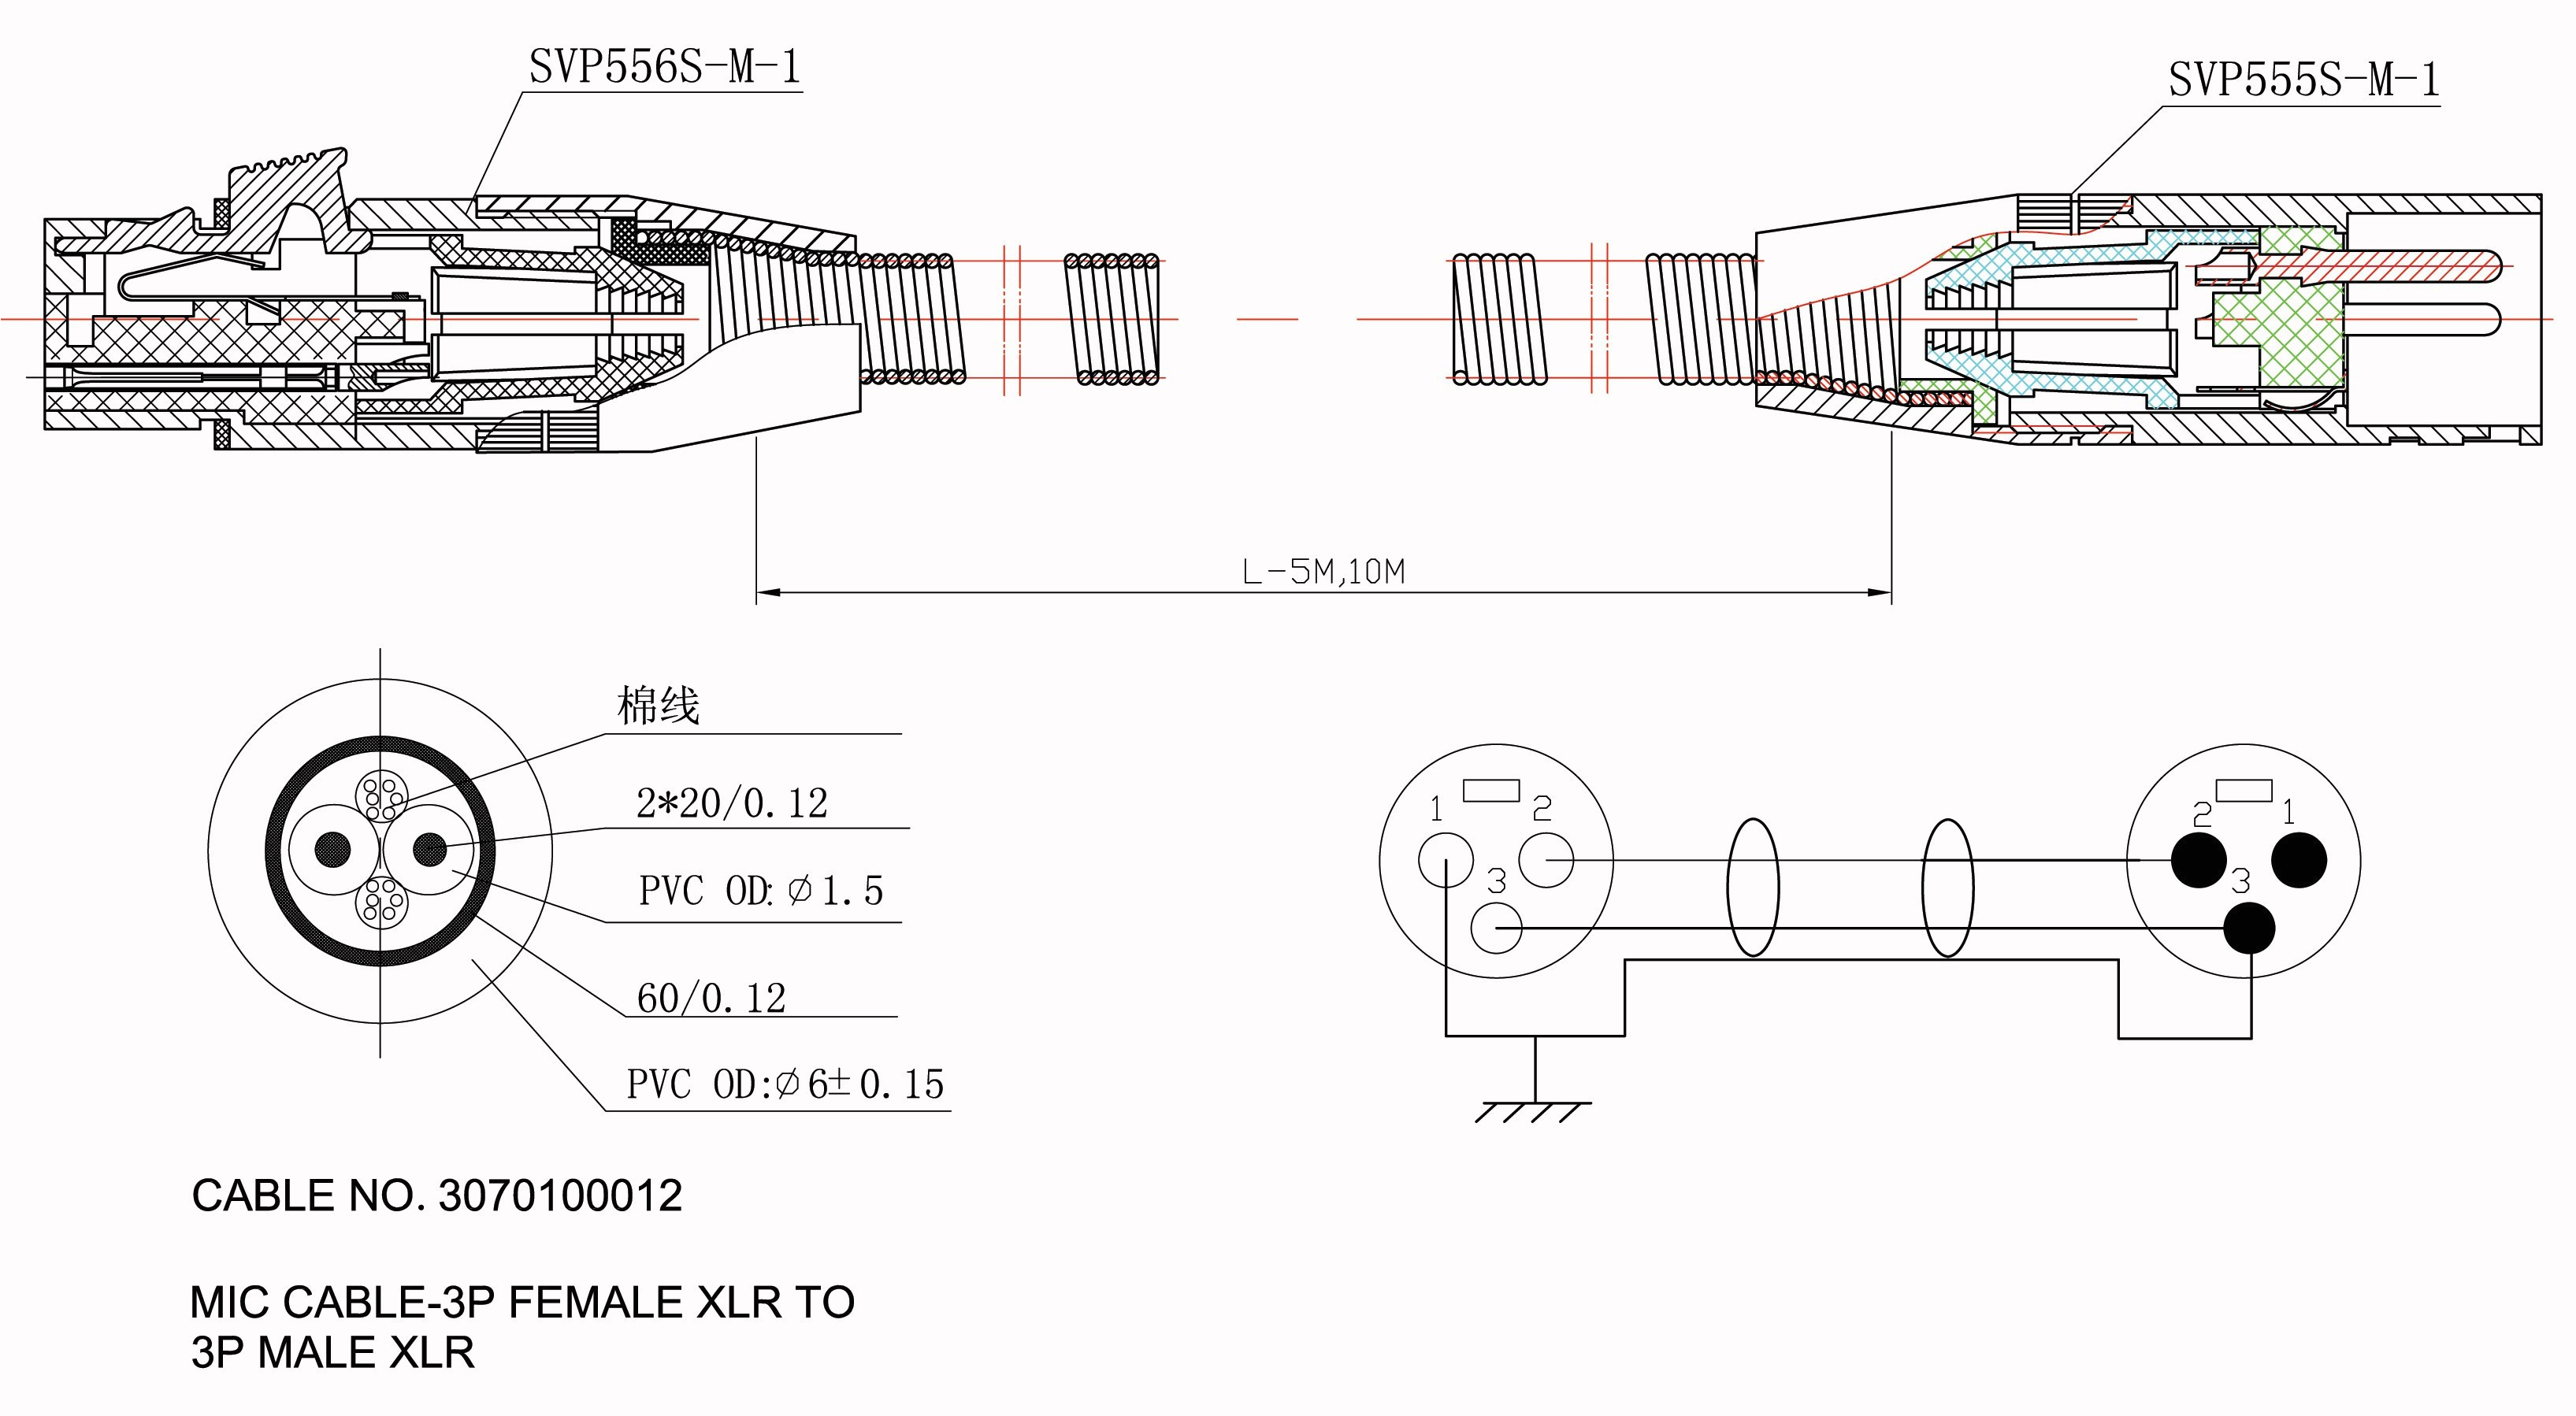 rj11 wiring diagram uk beautiful rj11 rj45 wiring diagram schematics rj45 cable wiring diagram